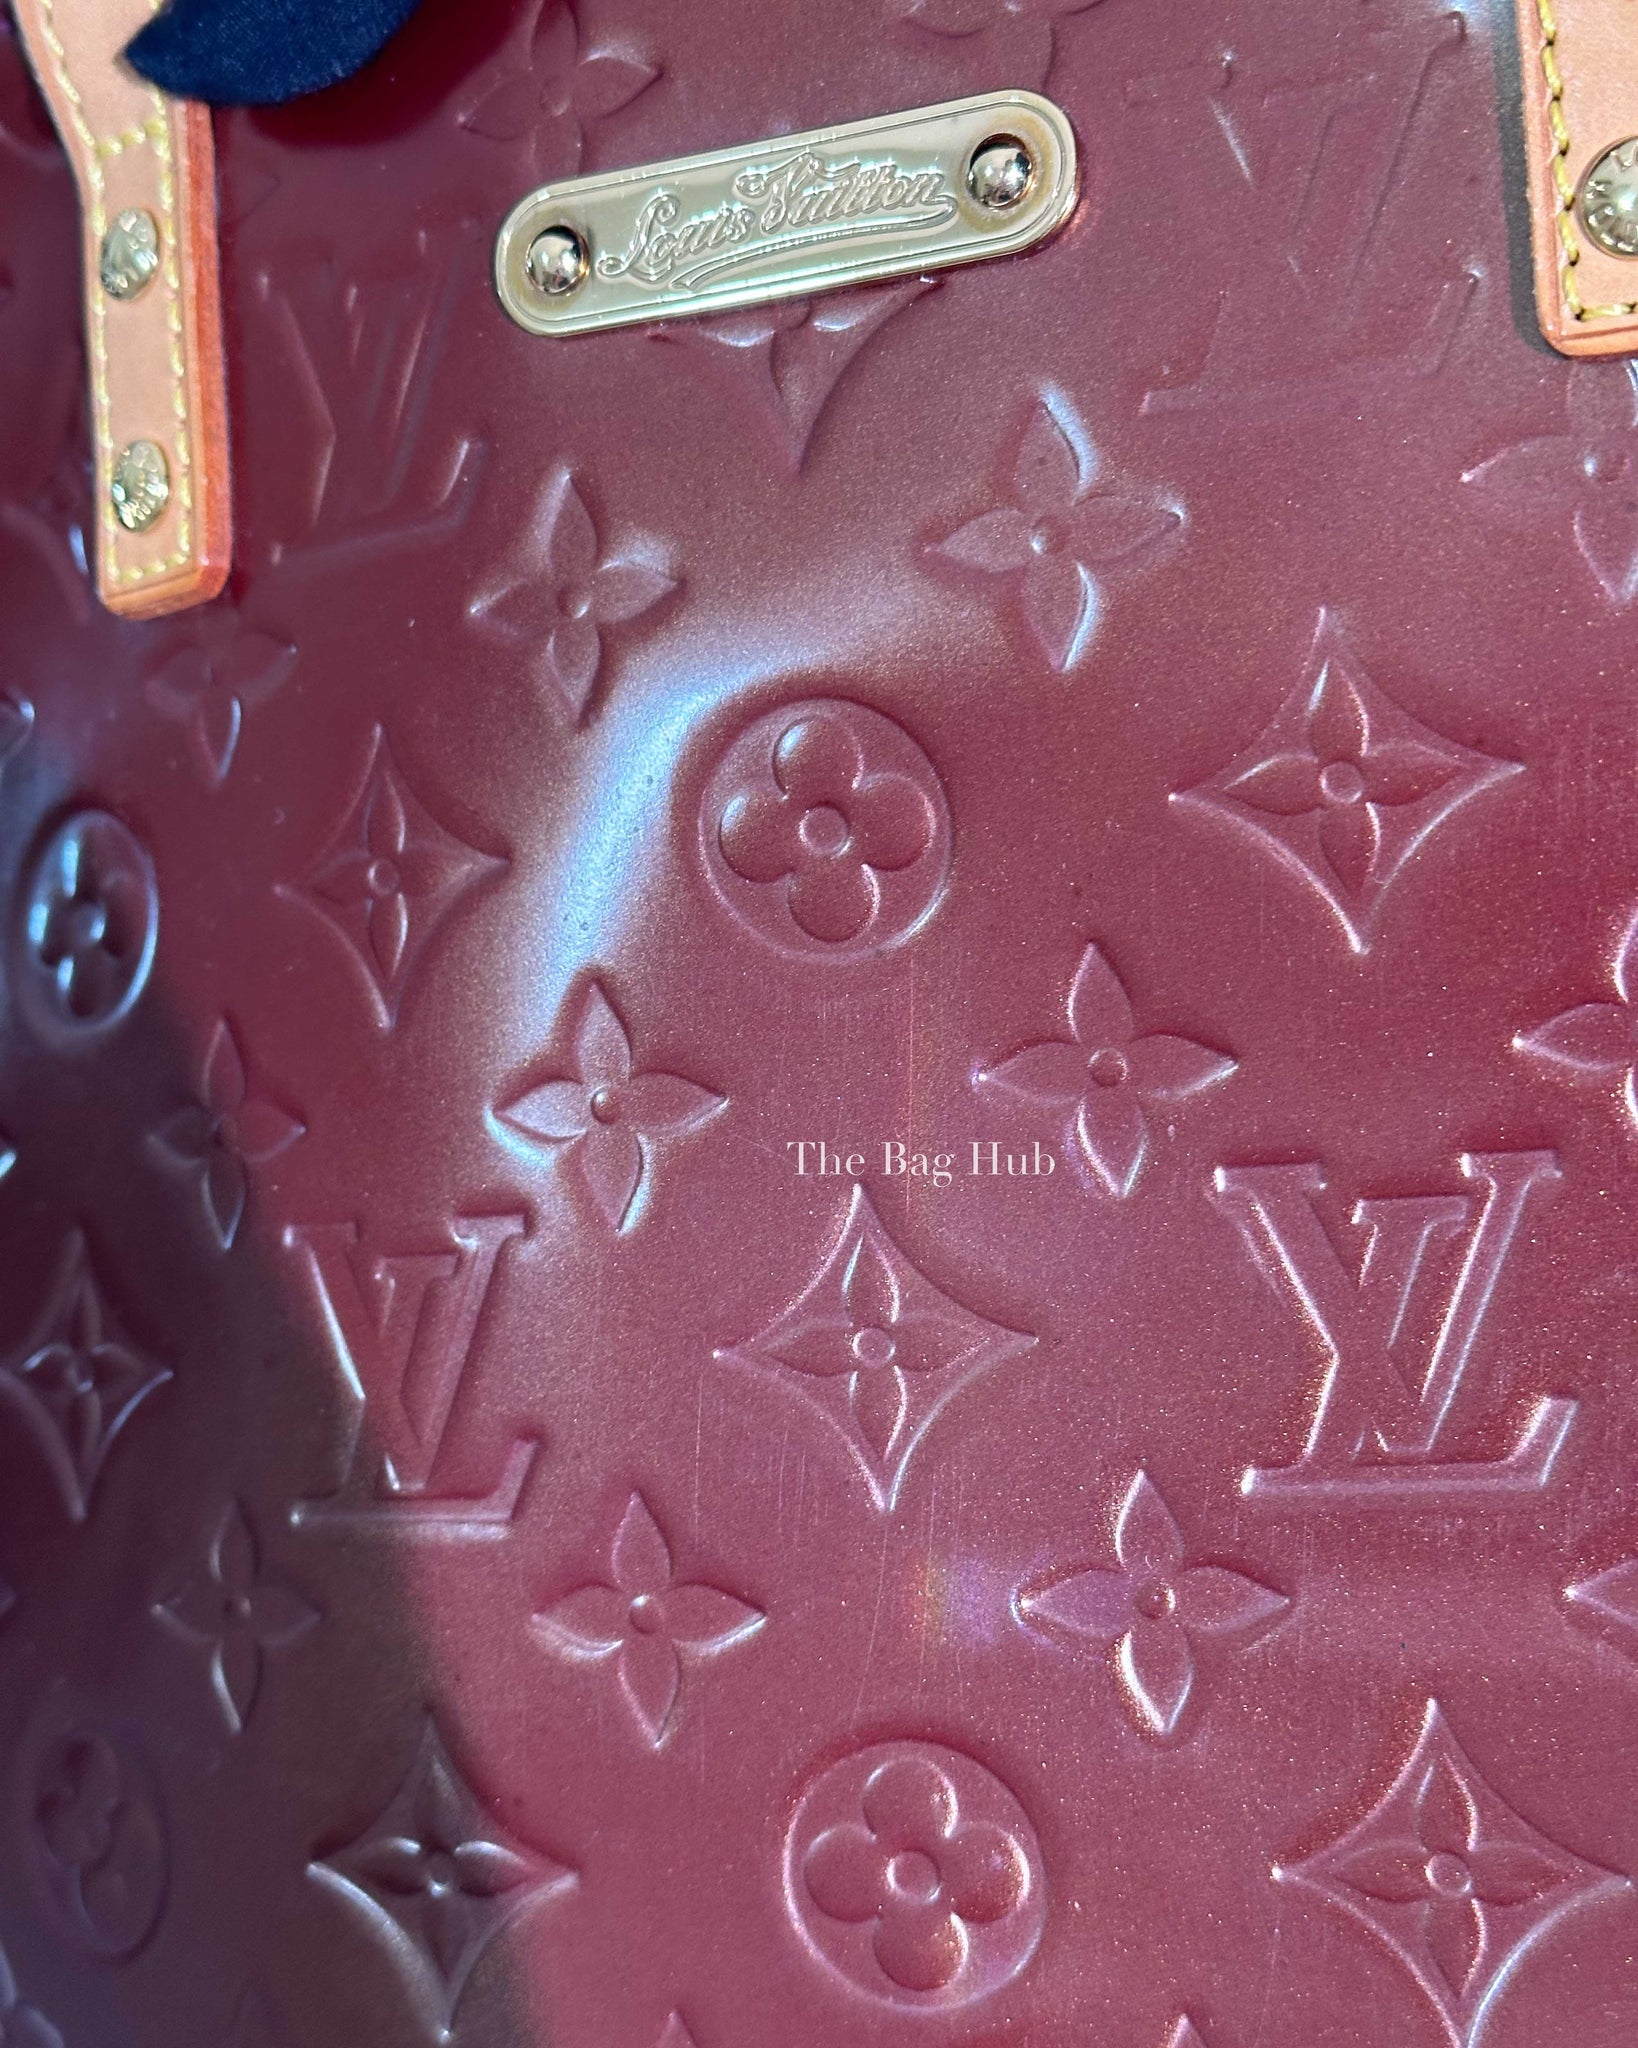 Louis Vuitton Rouge Fauviste Vernis Monogram GM Bellevue Bag